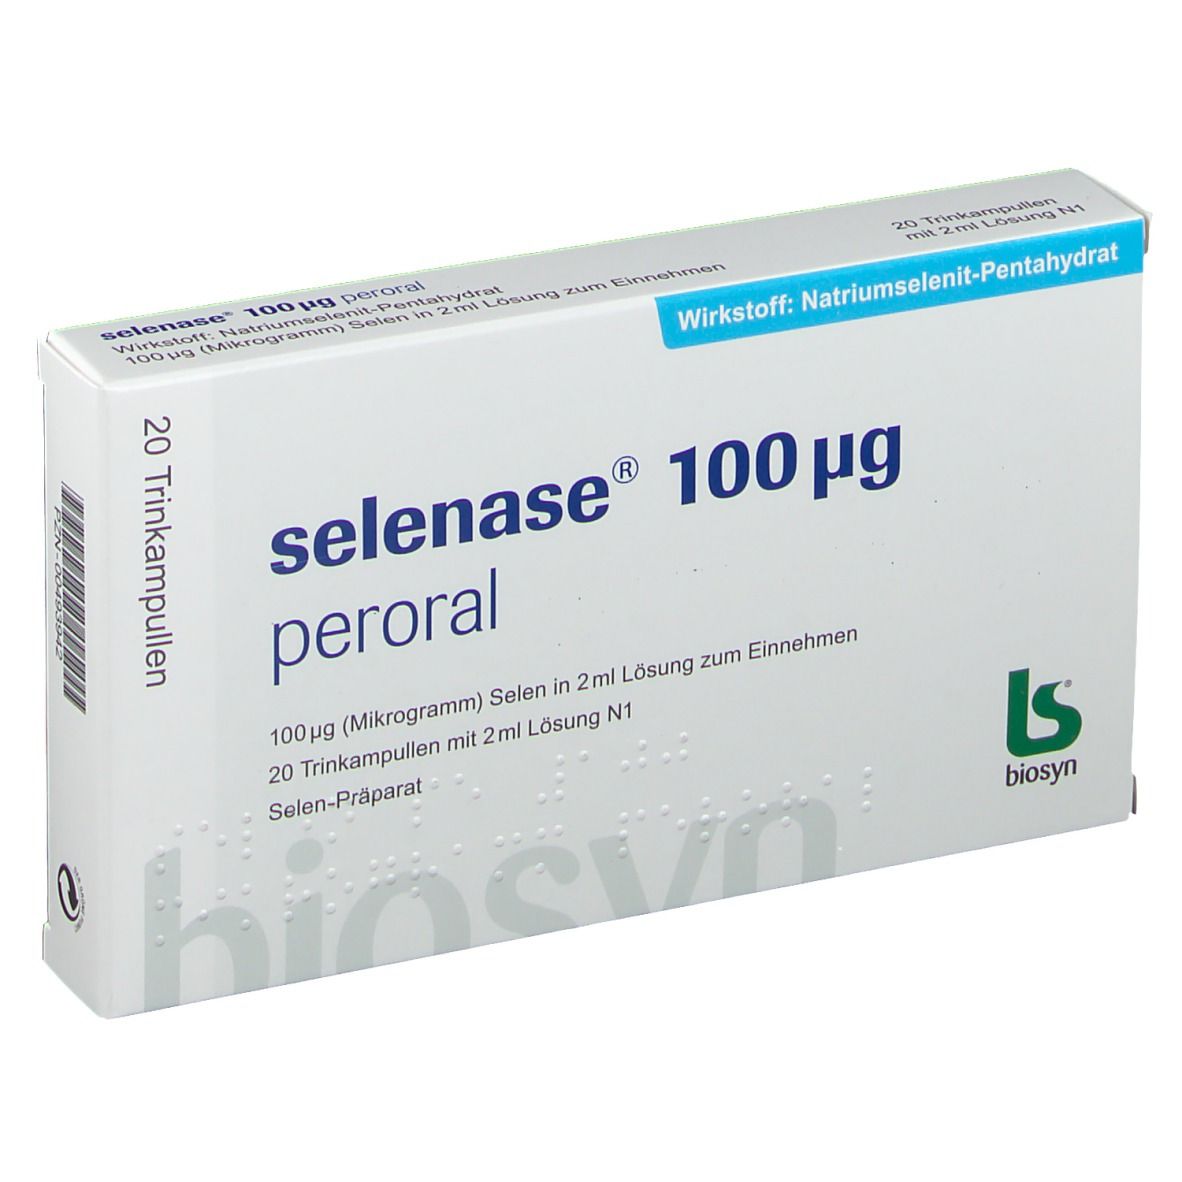 selenase® 100 µg peroral